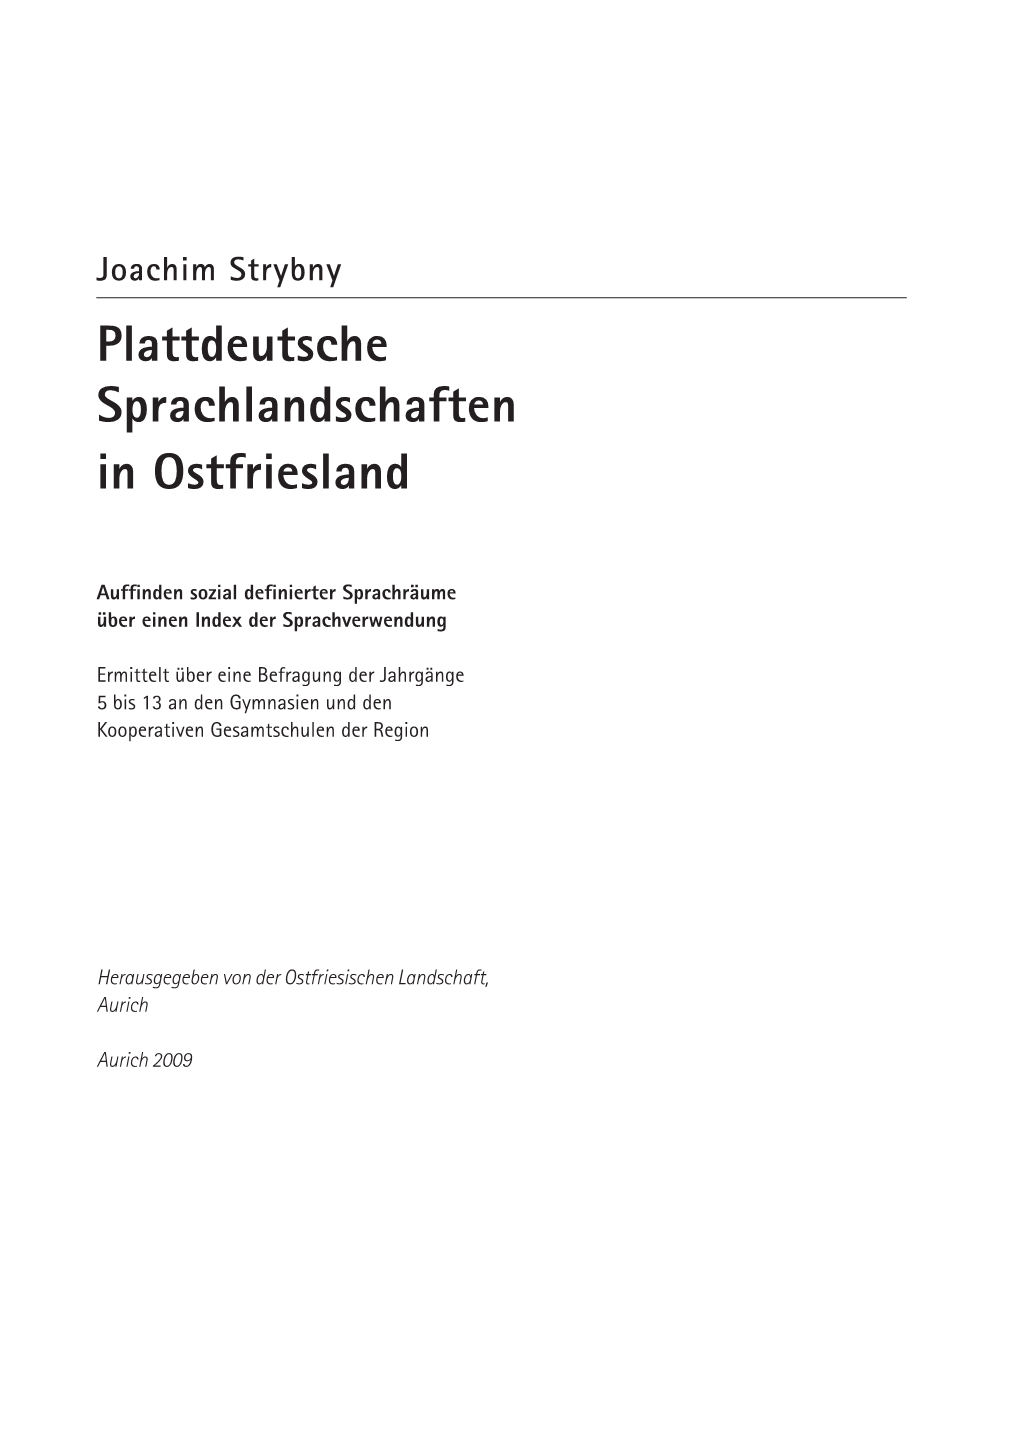 Plattdeutsche Sprachlandschaften in Ostfriesland